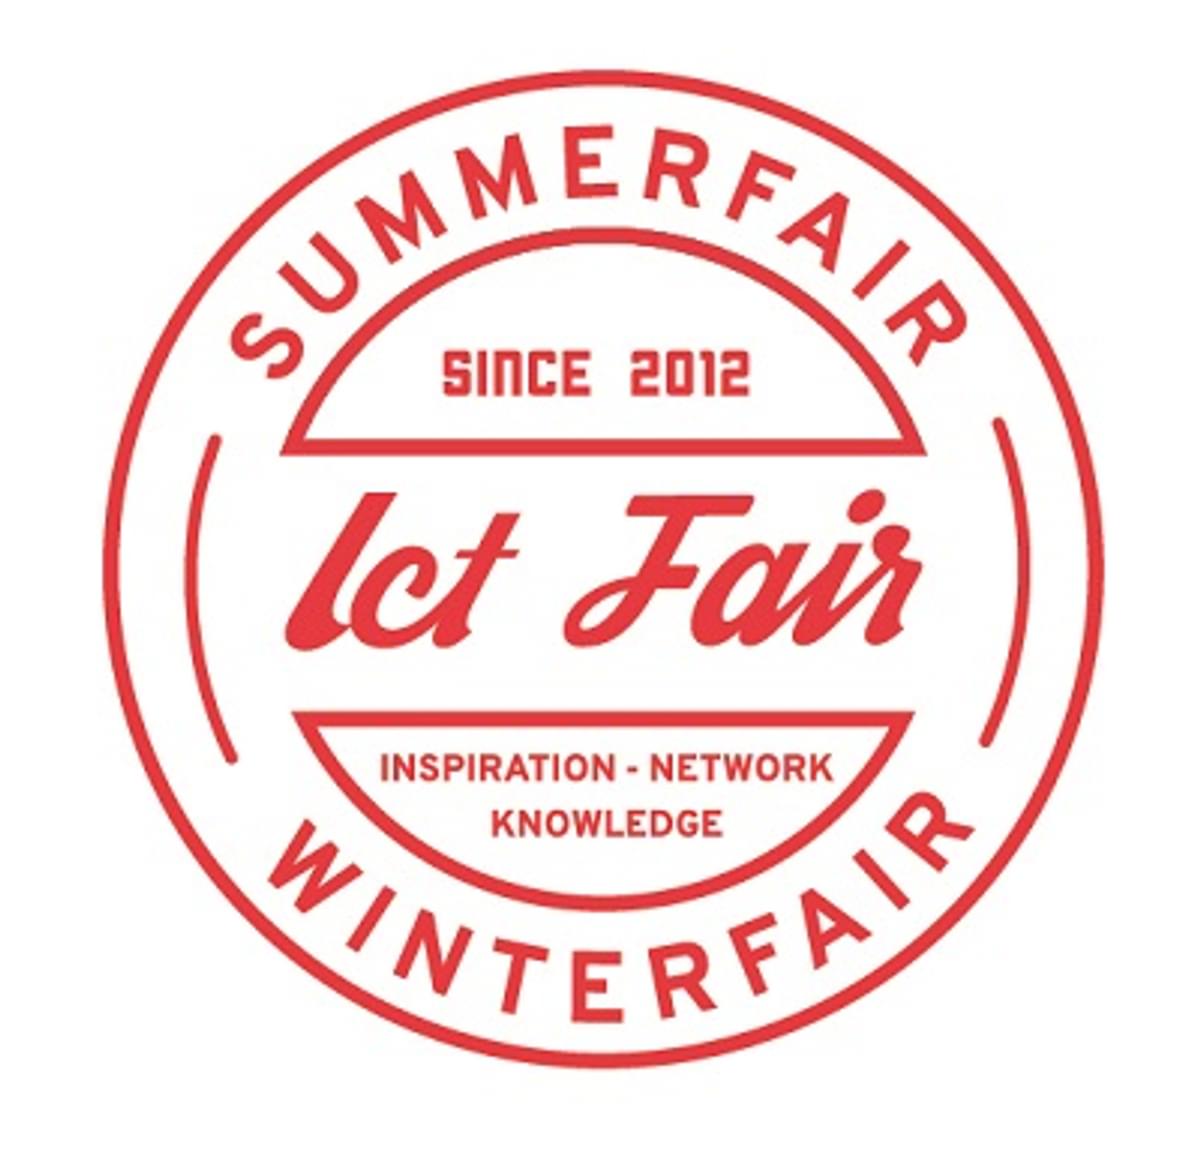 ICT Summerfair sprekers op 4 juli 2018 zijn bekend image